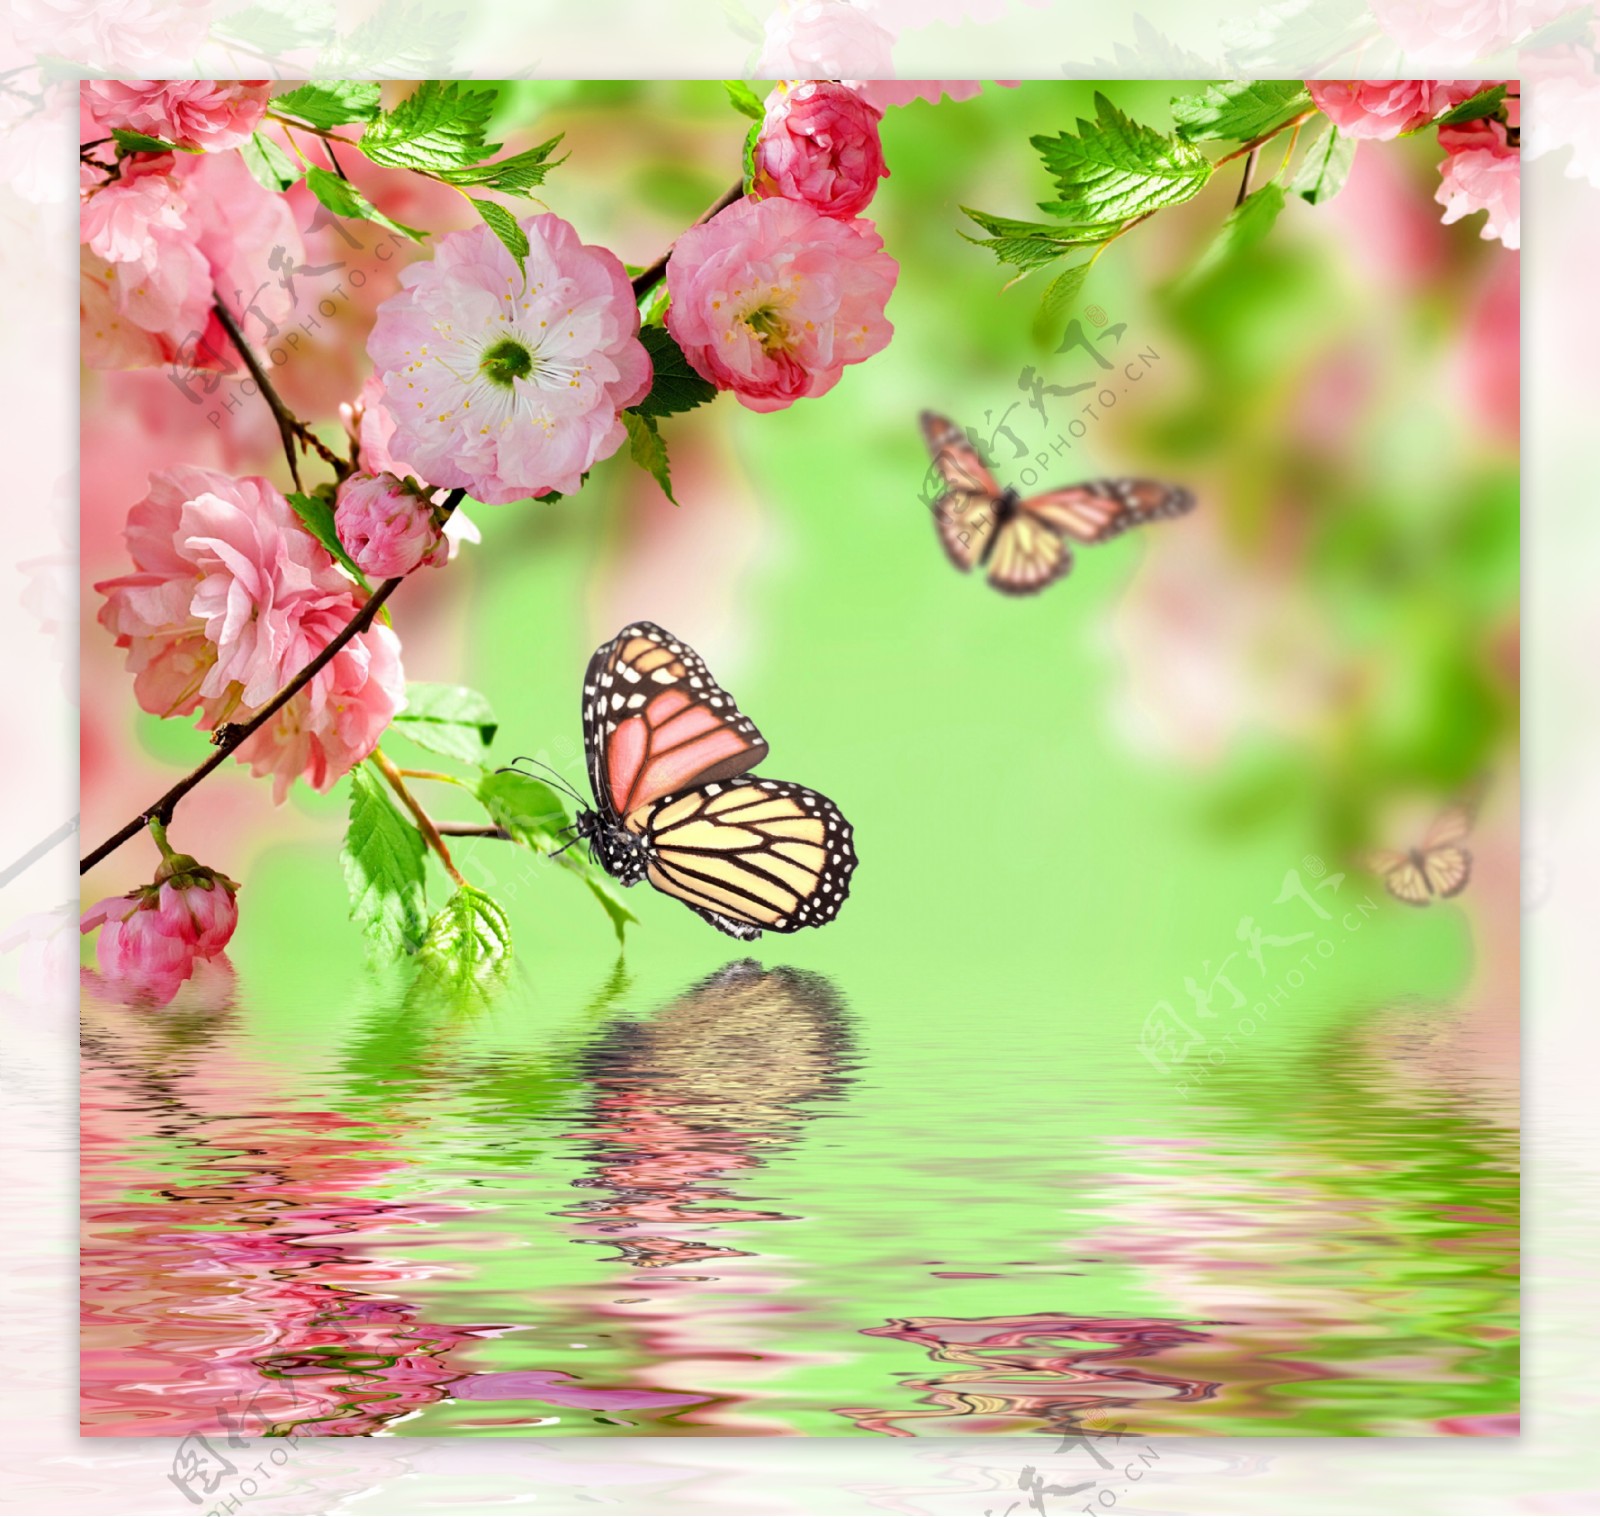 蝴蝶与盛开的樱花47001_花卉壁纸_花卉类_图库壁纸_68Design